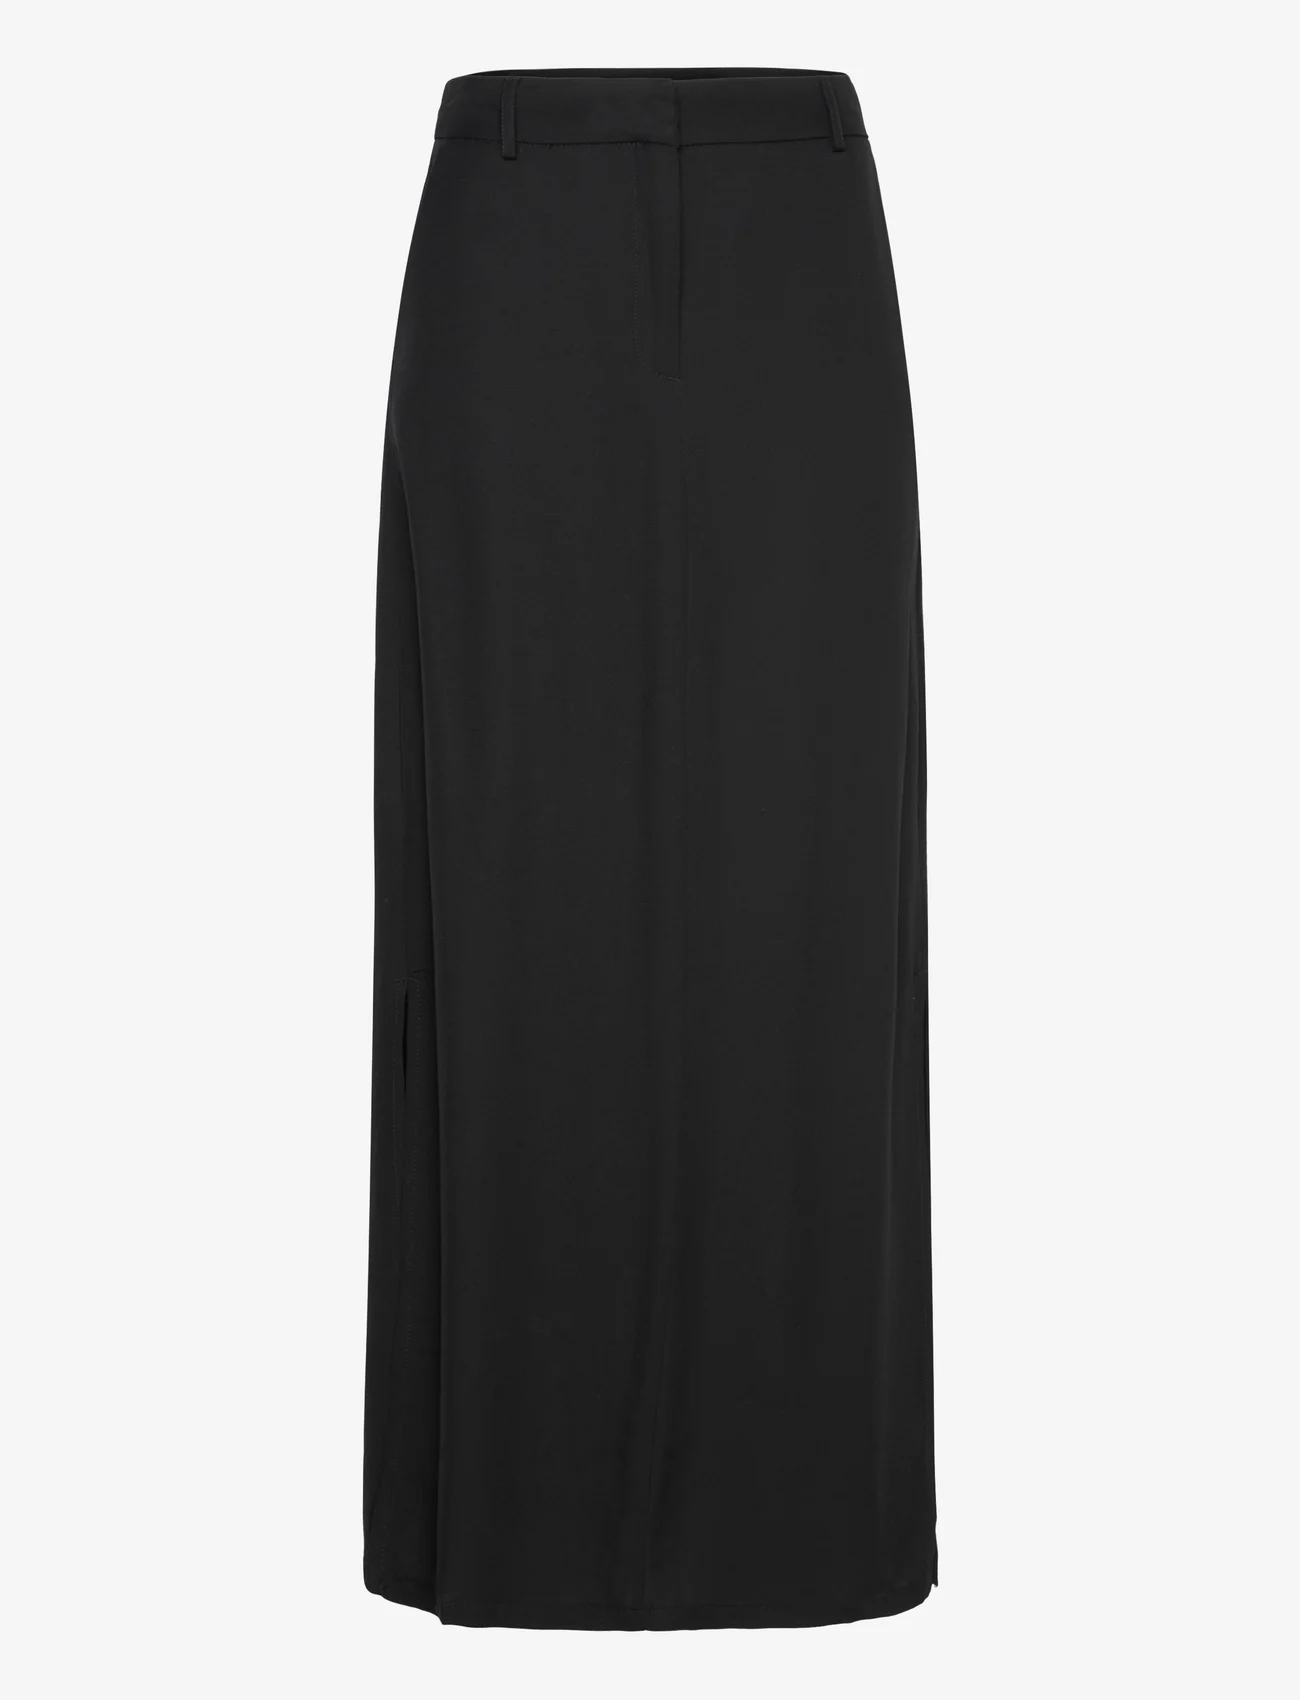 Lindex - Skirt Winona - madalaimad hinnad - black - 0